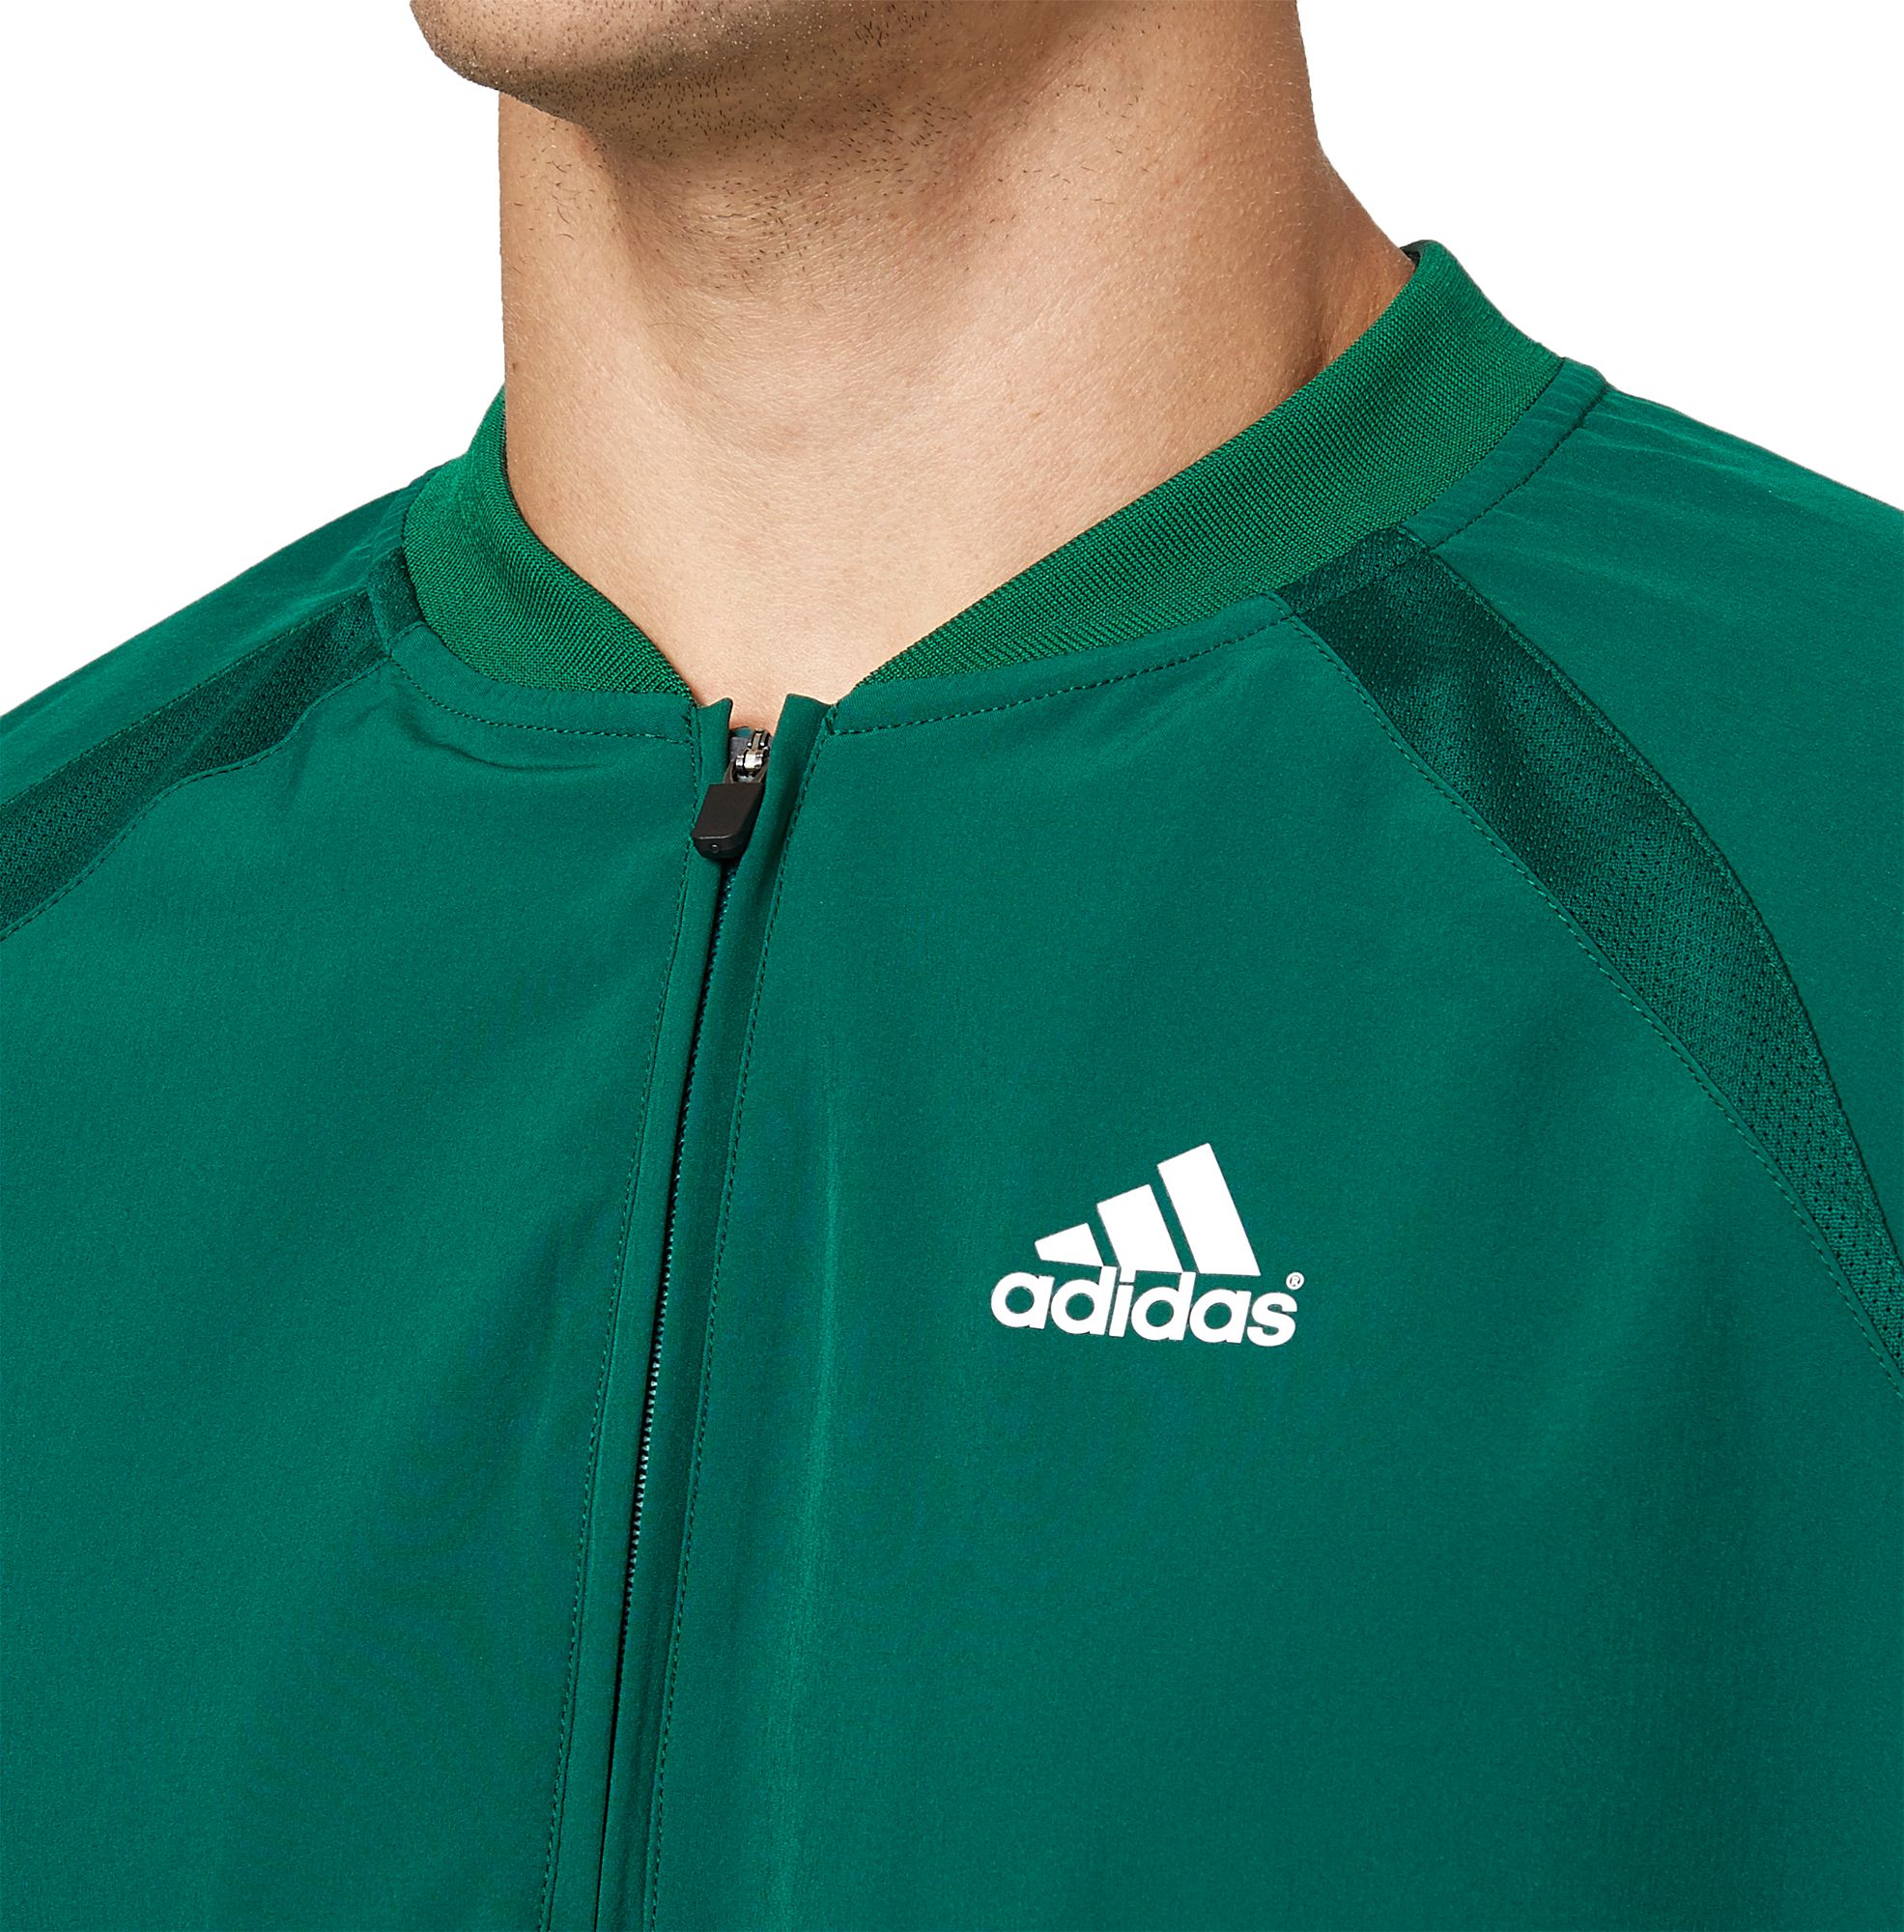 adidas men's triple stripe long sleeve baseball jacket